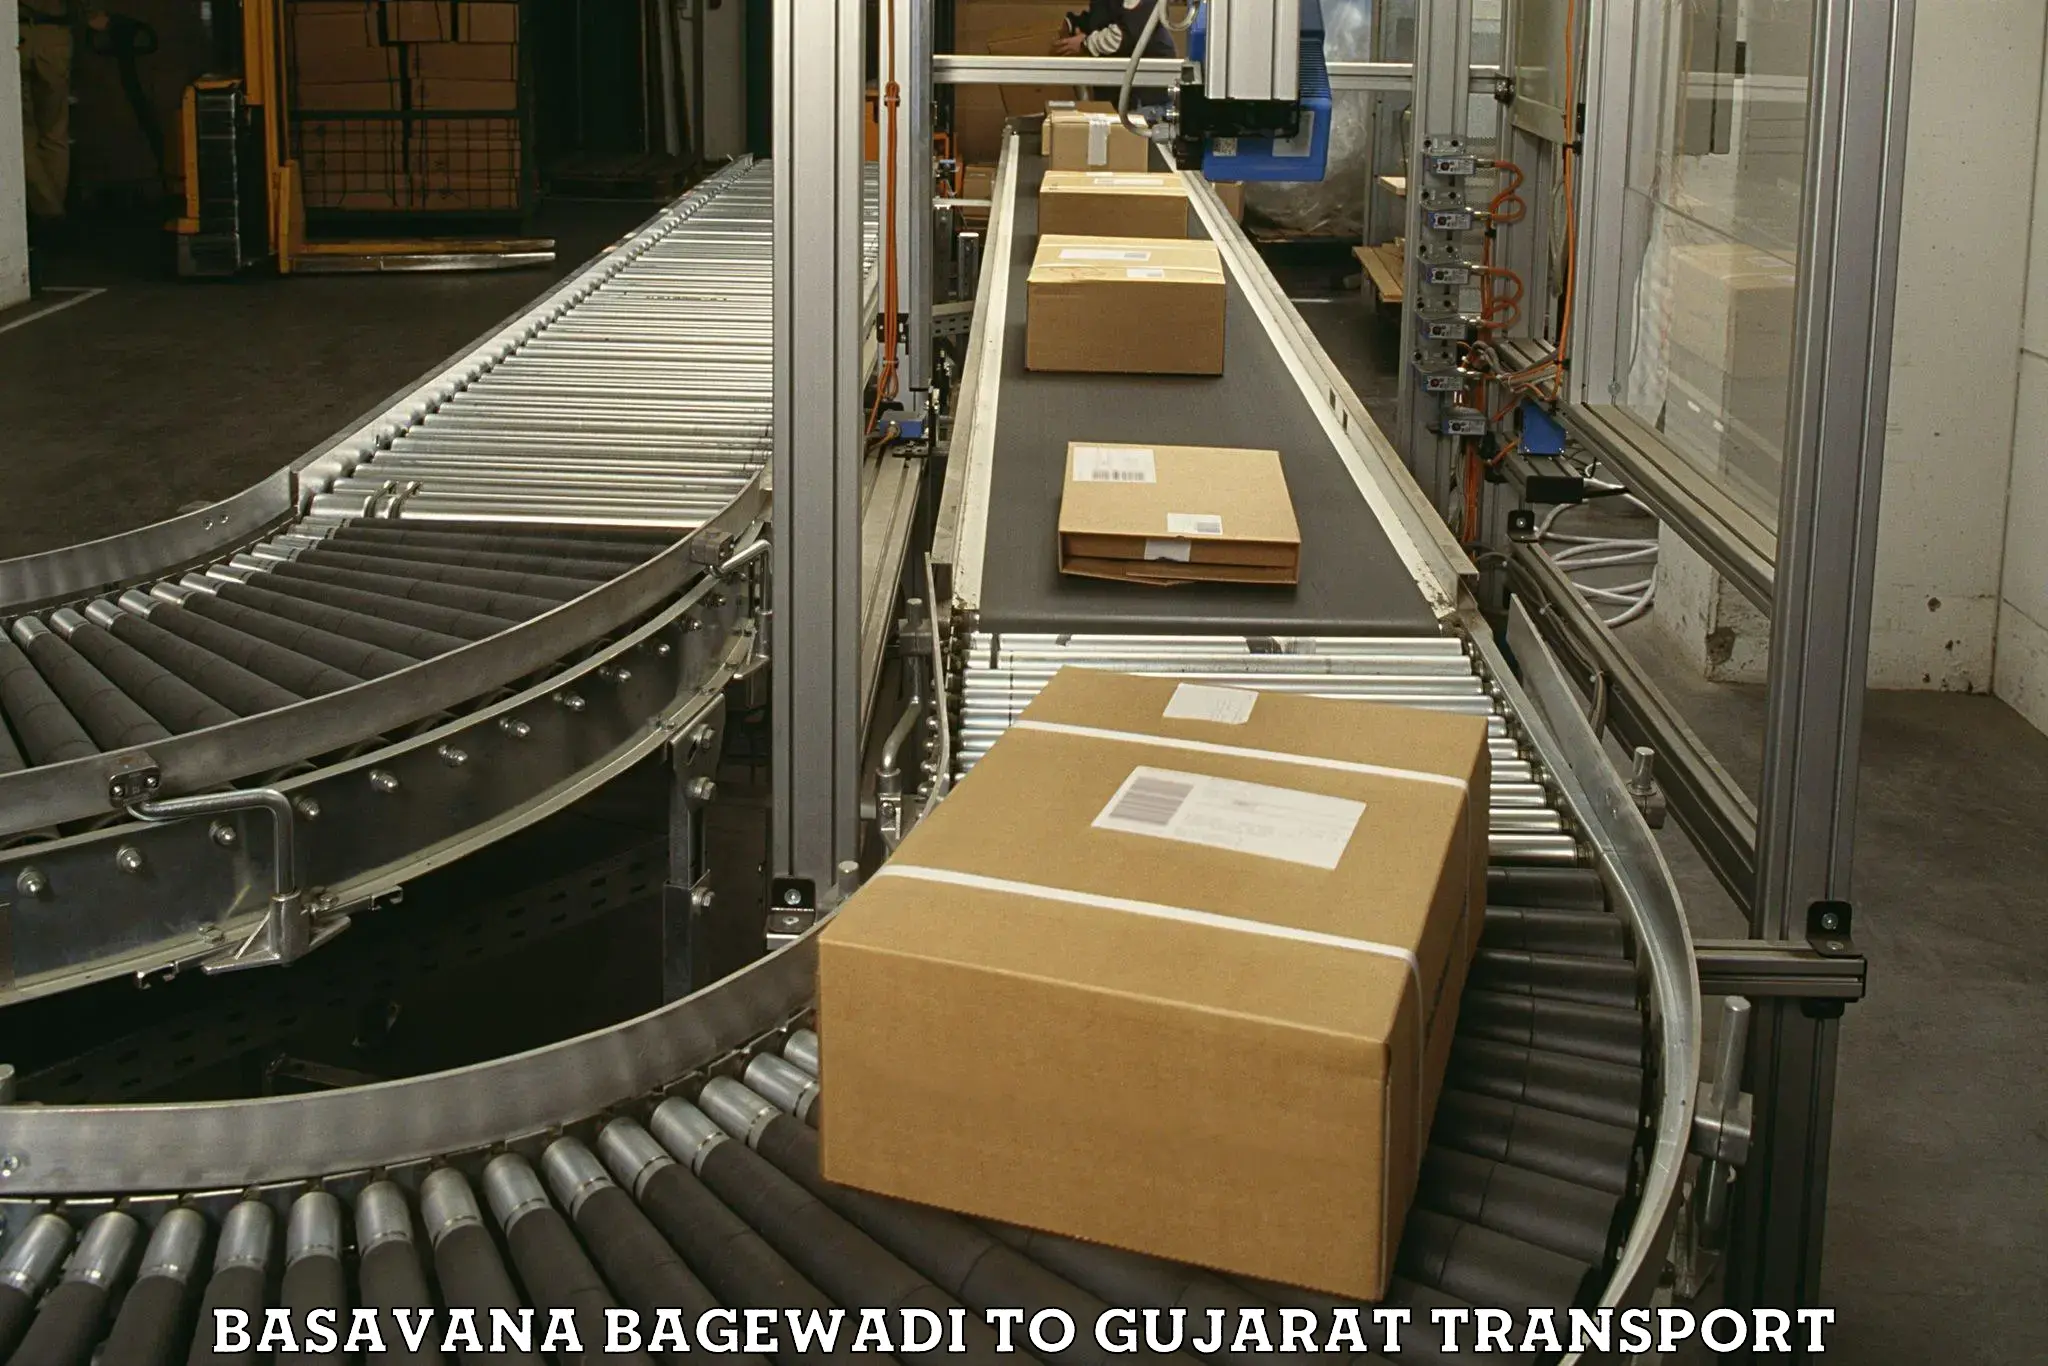 Commercial transport service Basavana Bagewadi to Idar